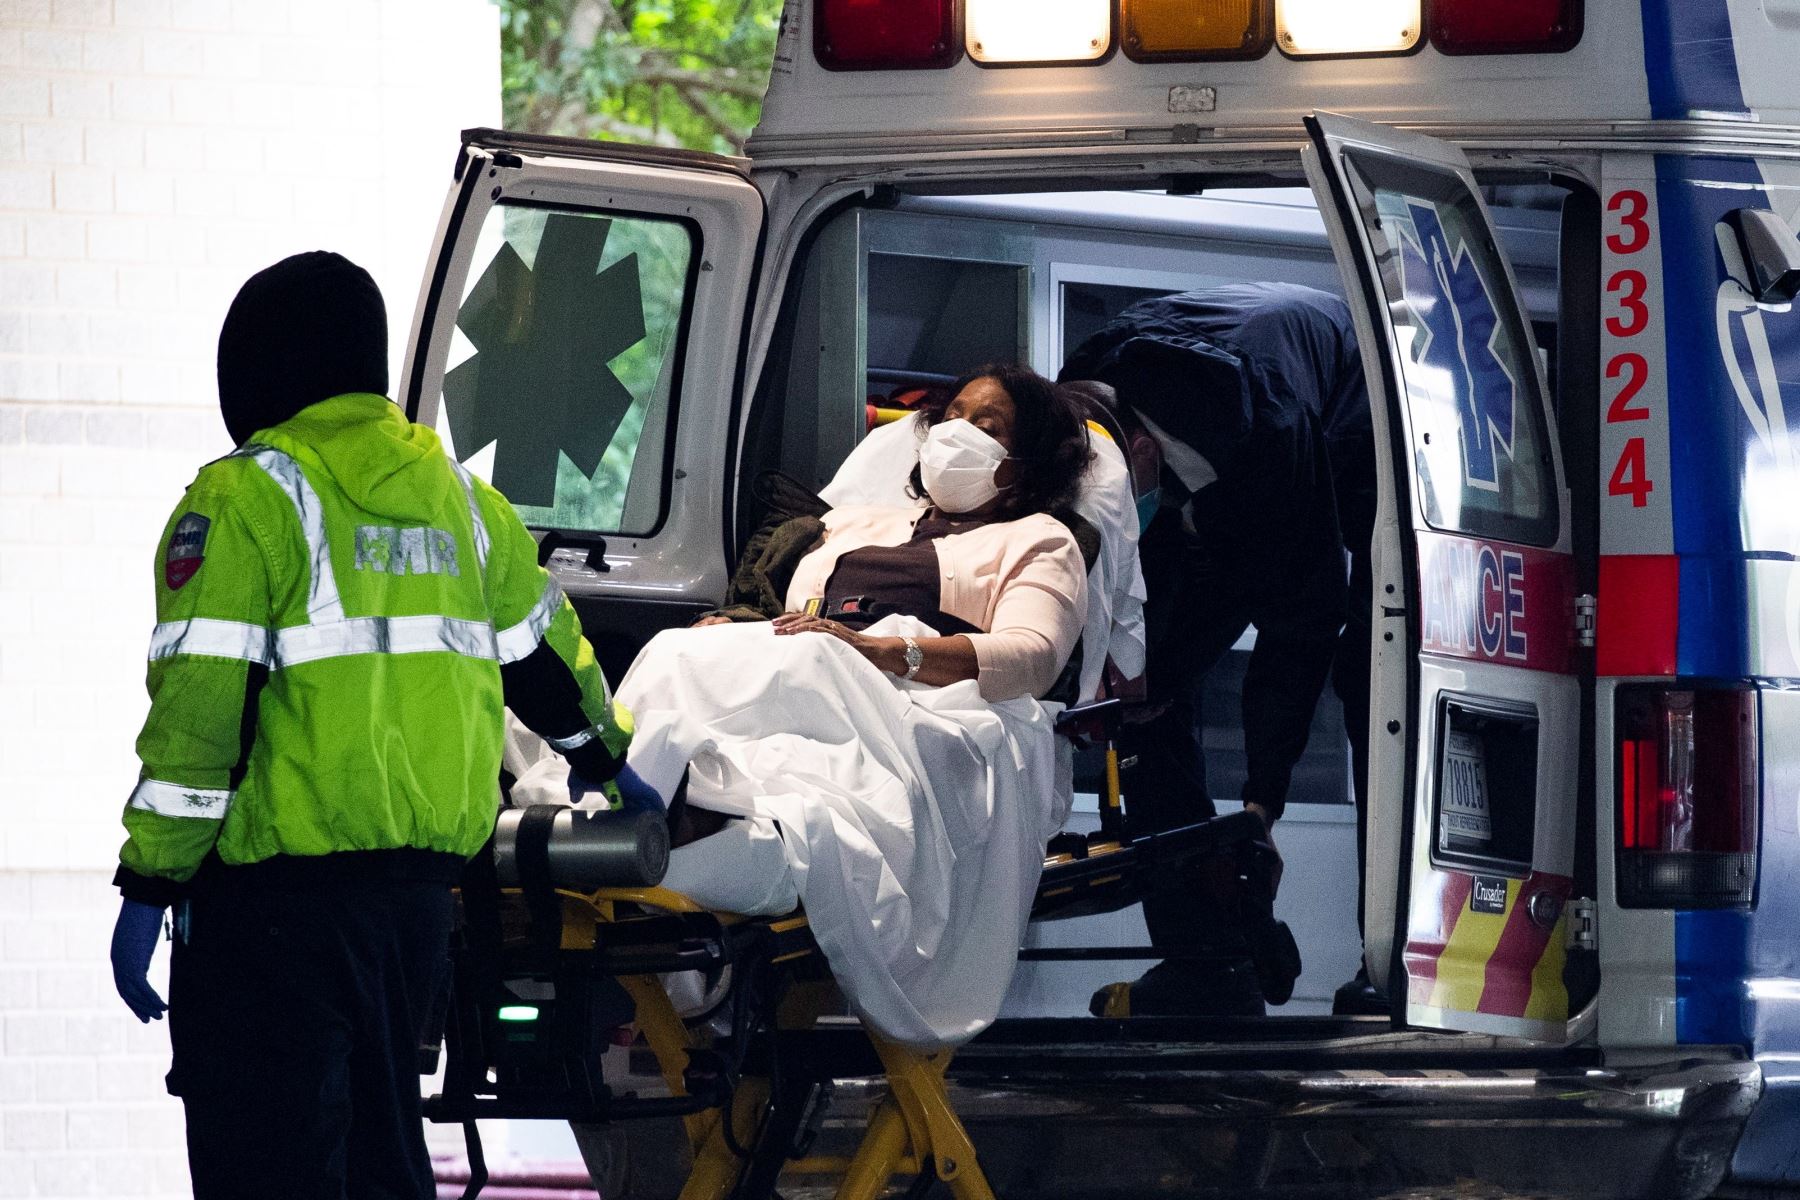 Los técnicos médicos de emergencia transportan a un paciente desde una ambulancia al llegar a la bahía de emergencia en el Hospital de la Universidad George Washington en Washington, EE. UU. Foto: EFE